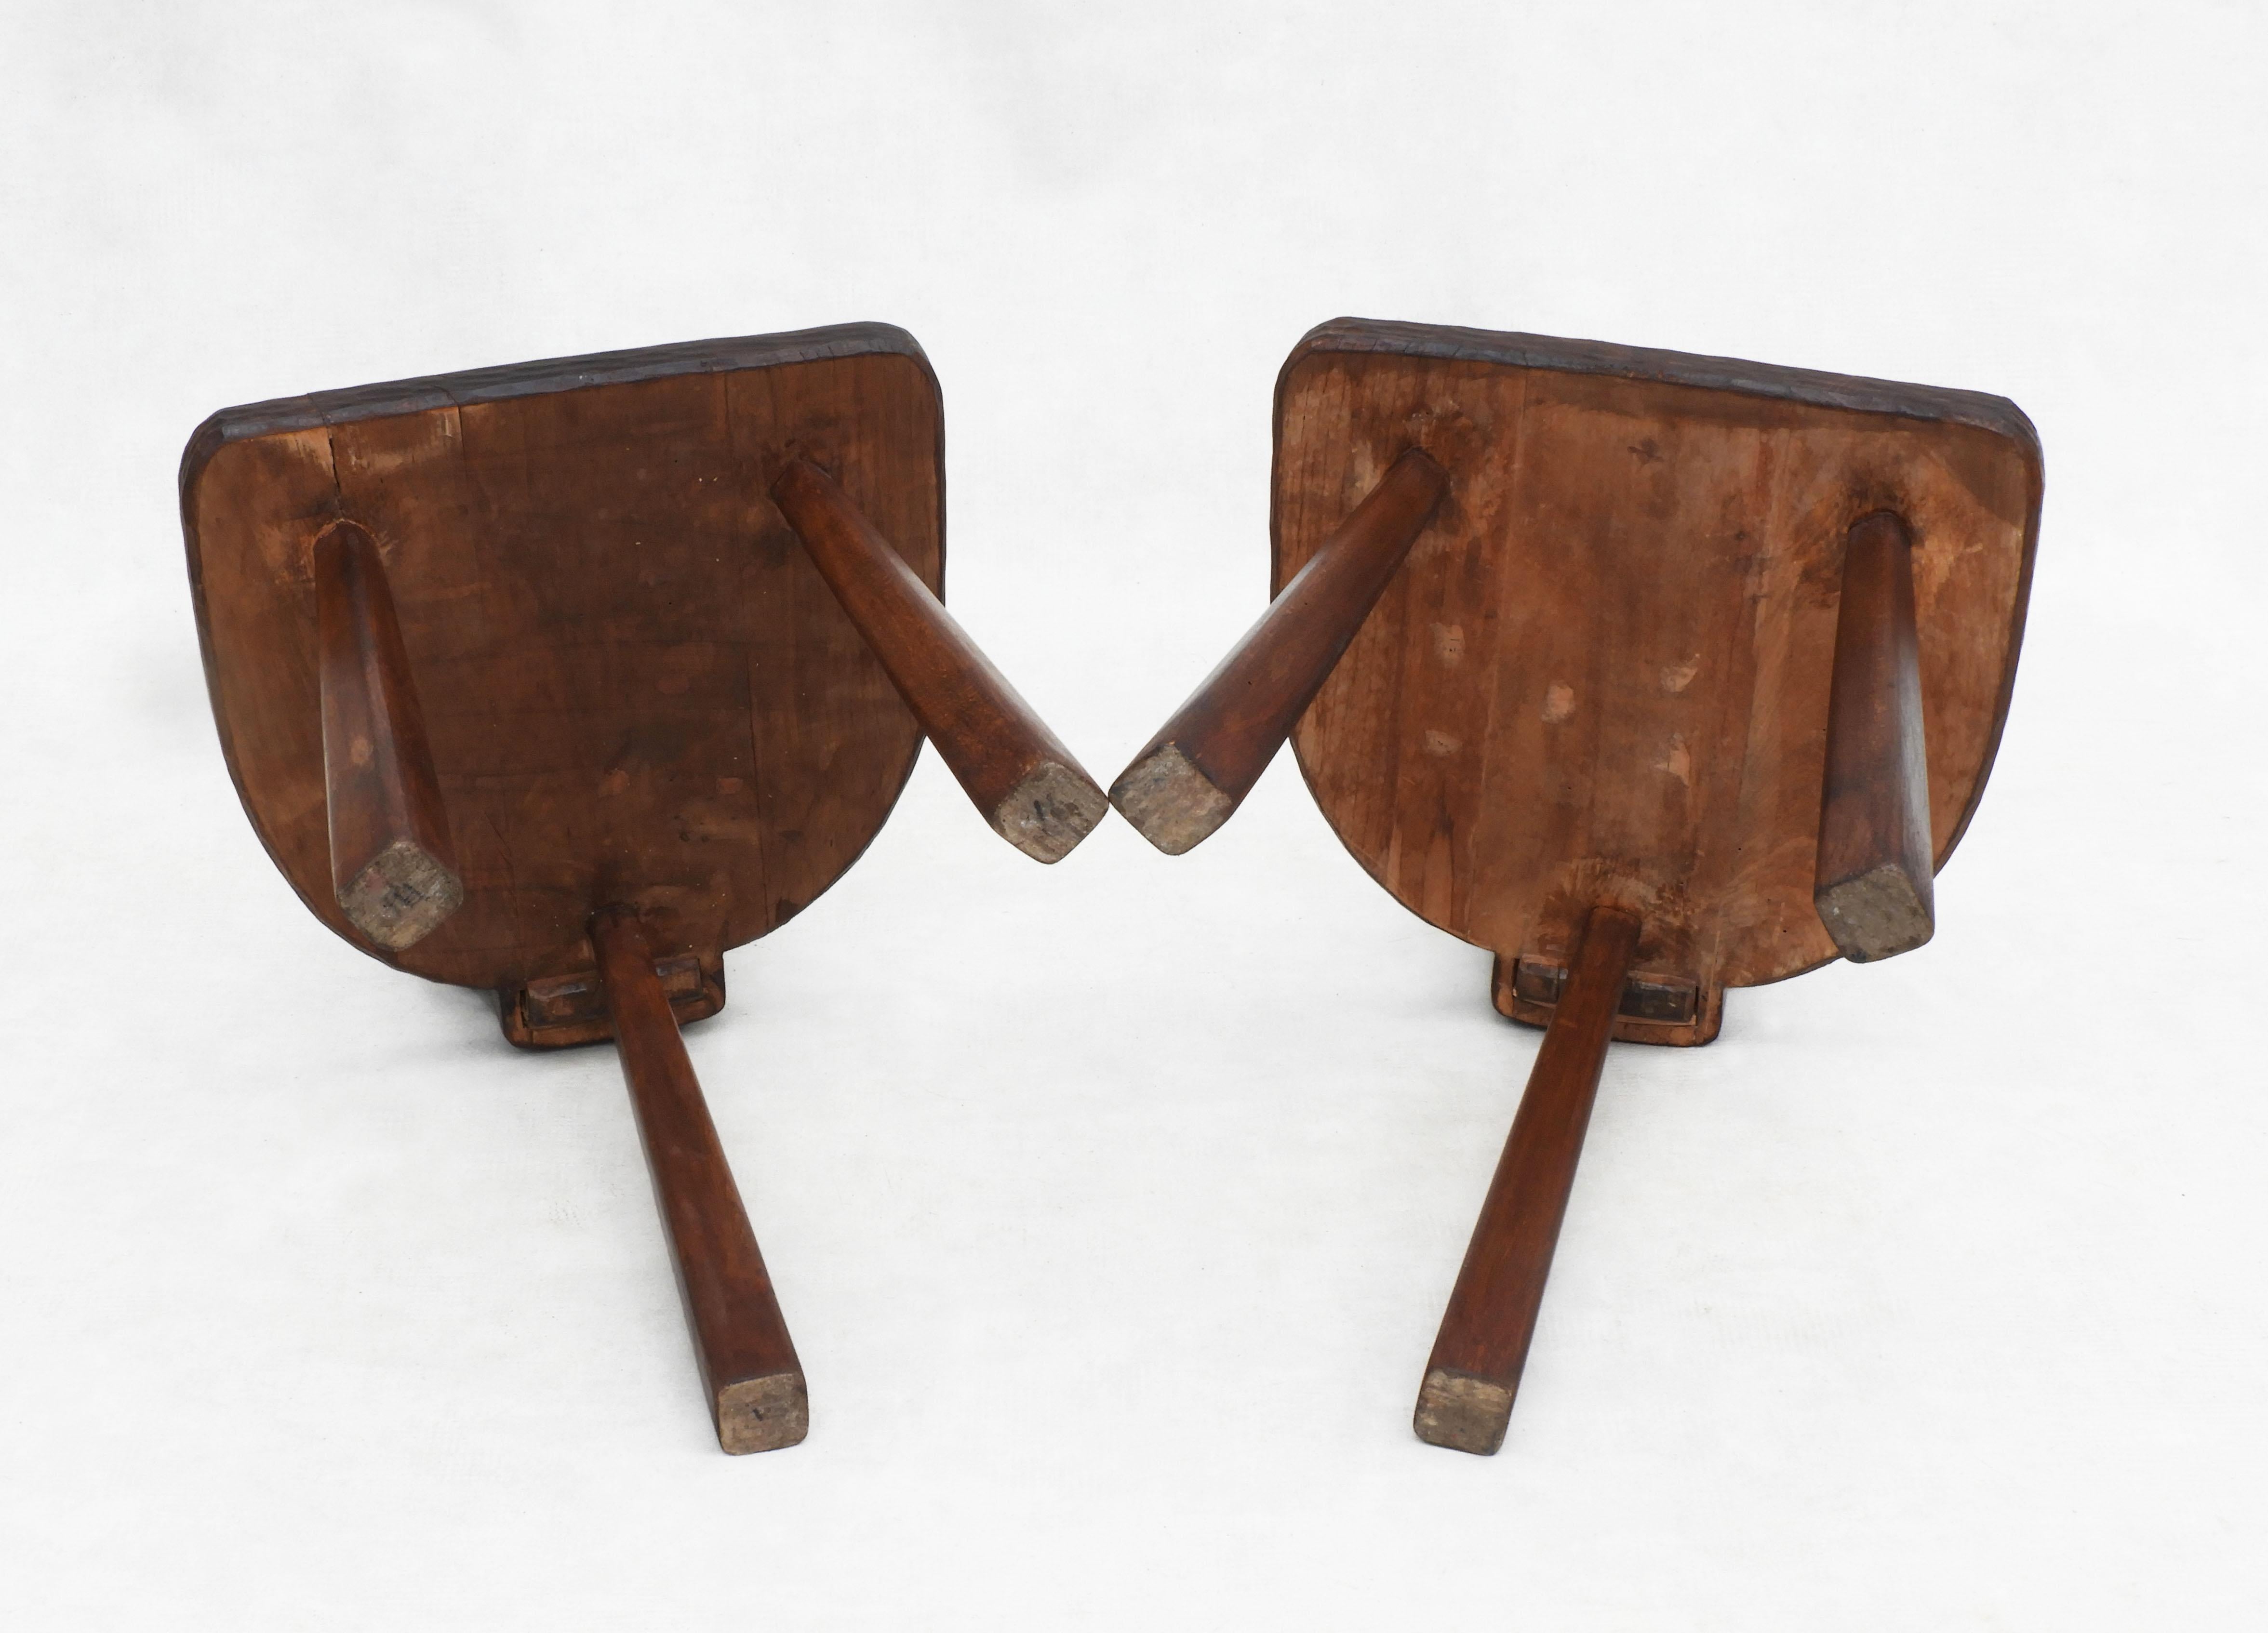 Pair of Basque Tripod Chairs 1950s European Folk Art For Sale 2